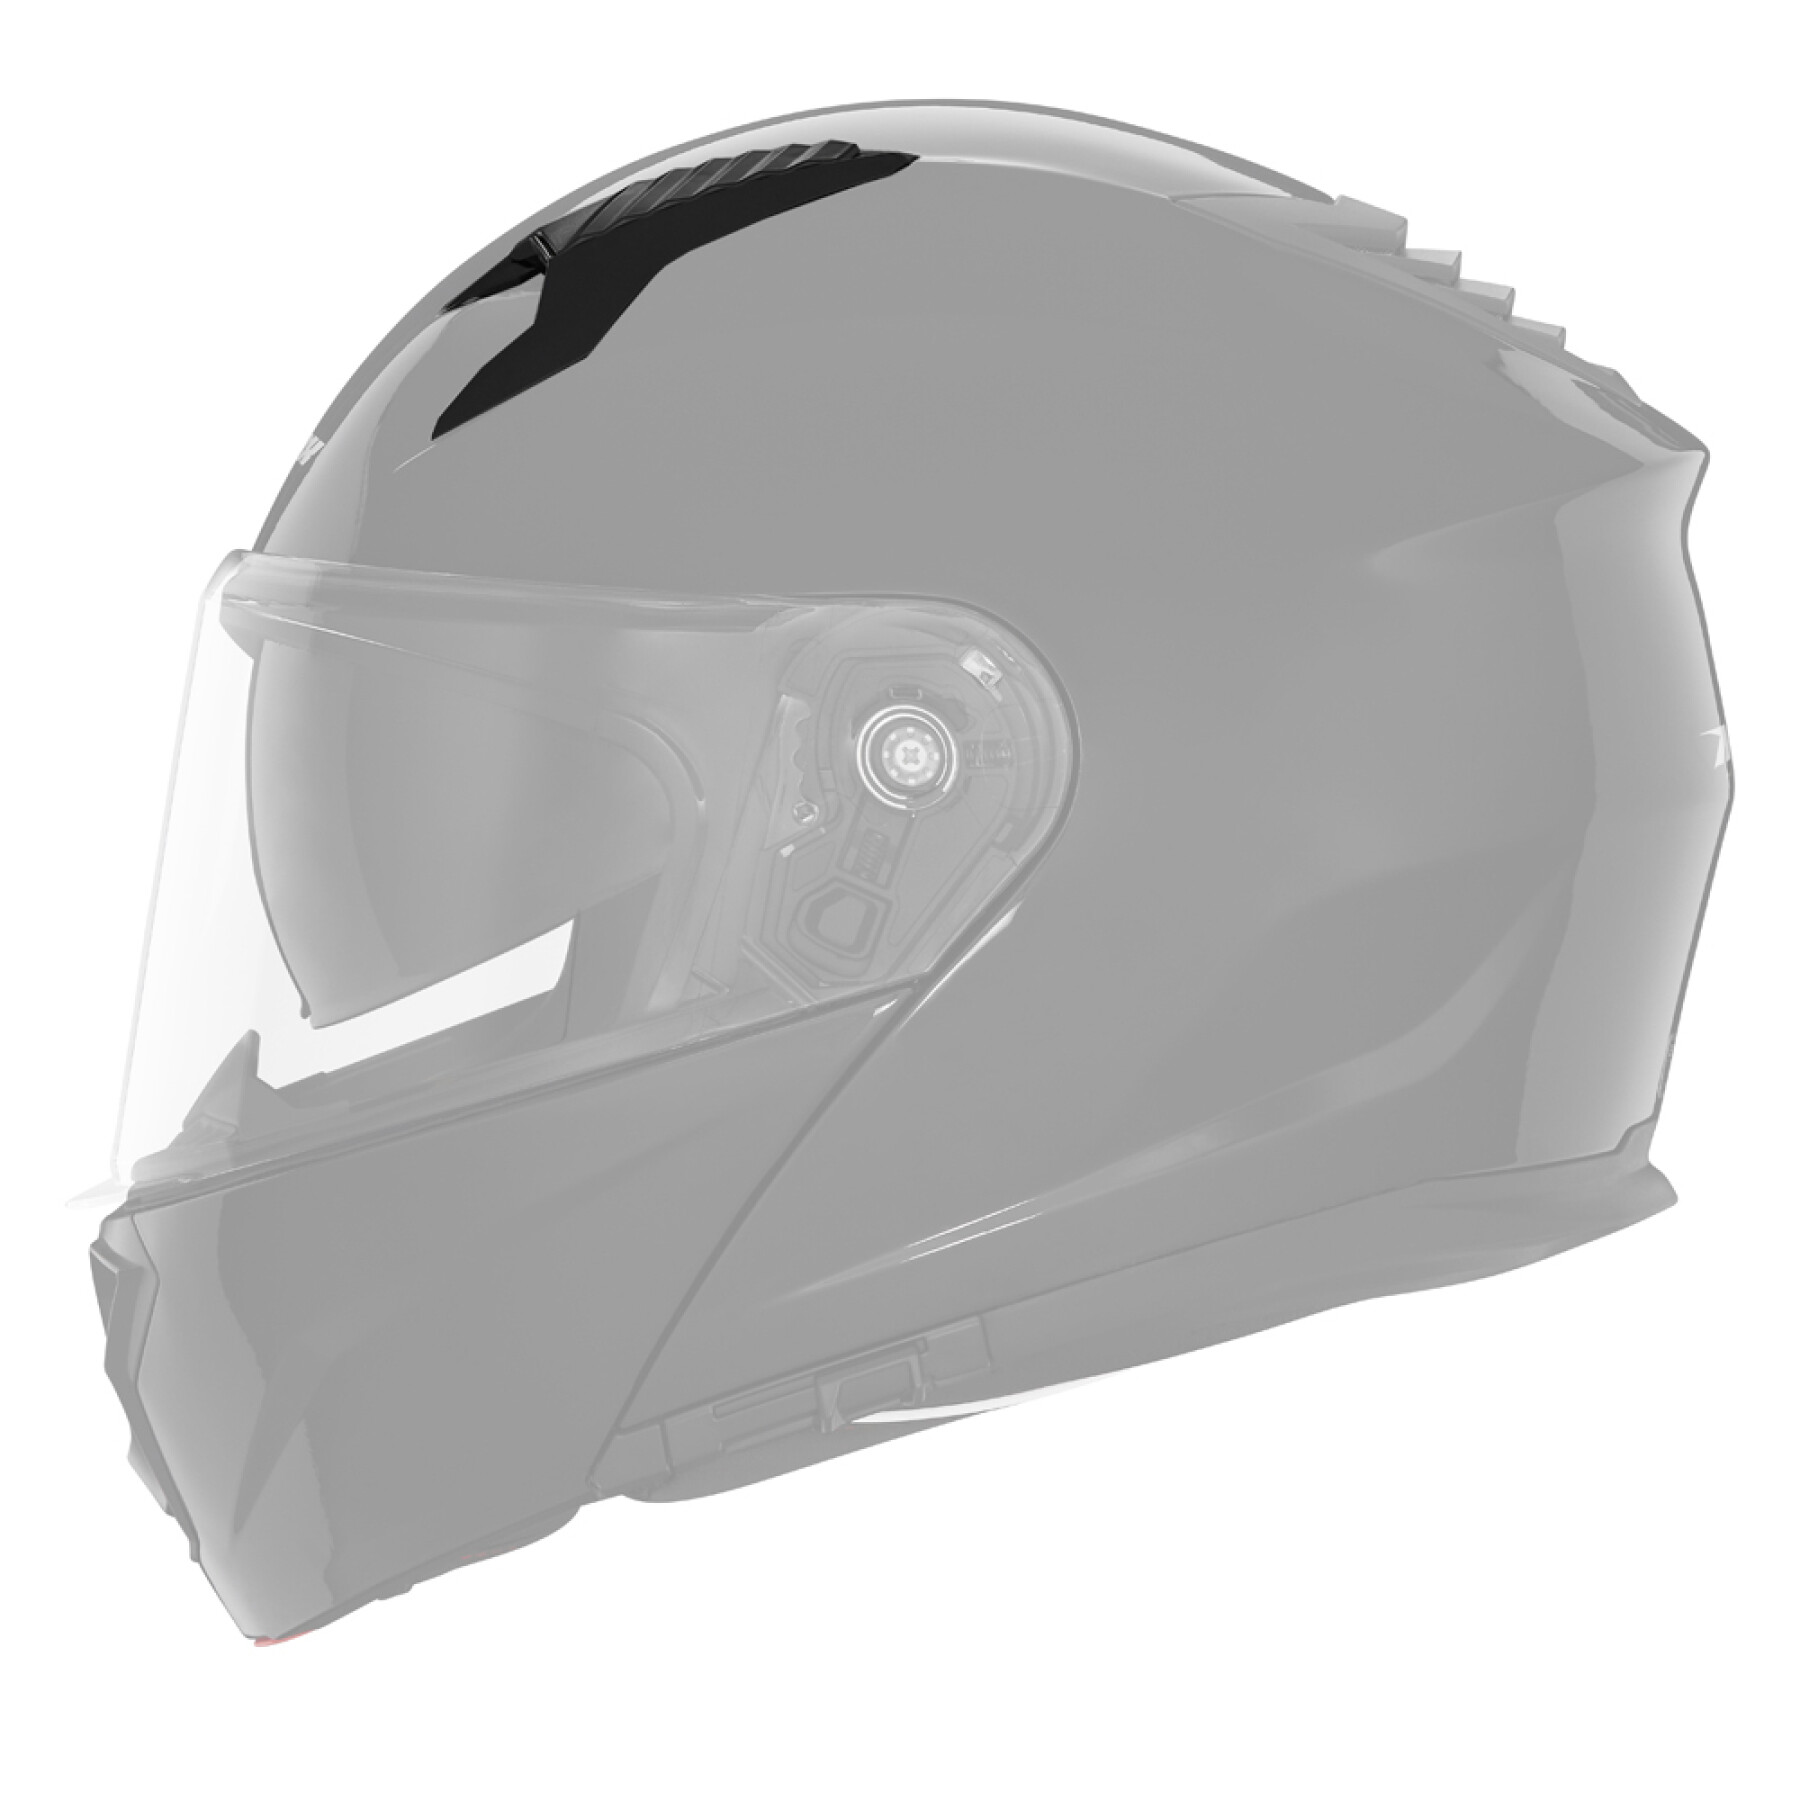 Capacete de motociclista com ventilação superior Nox N 968